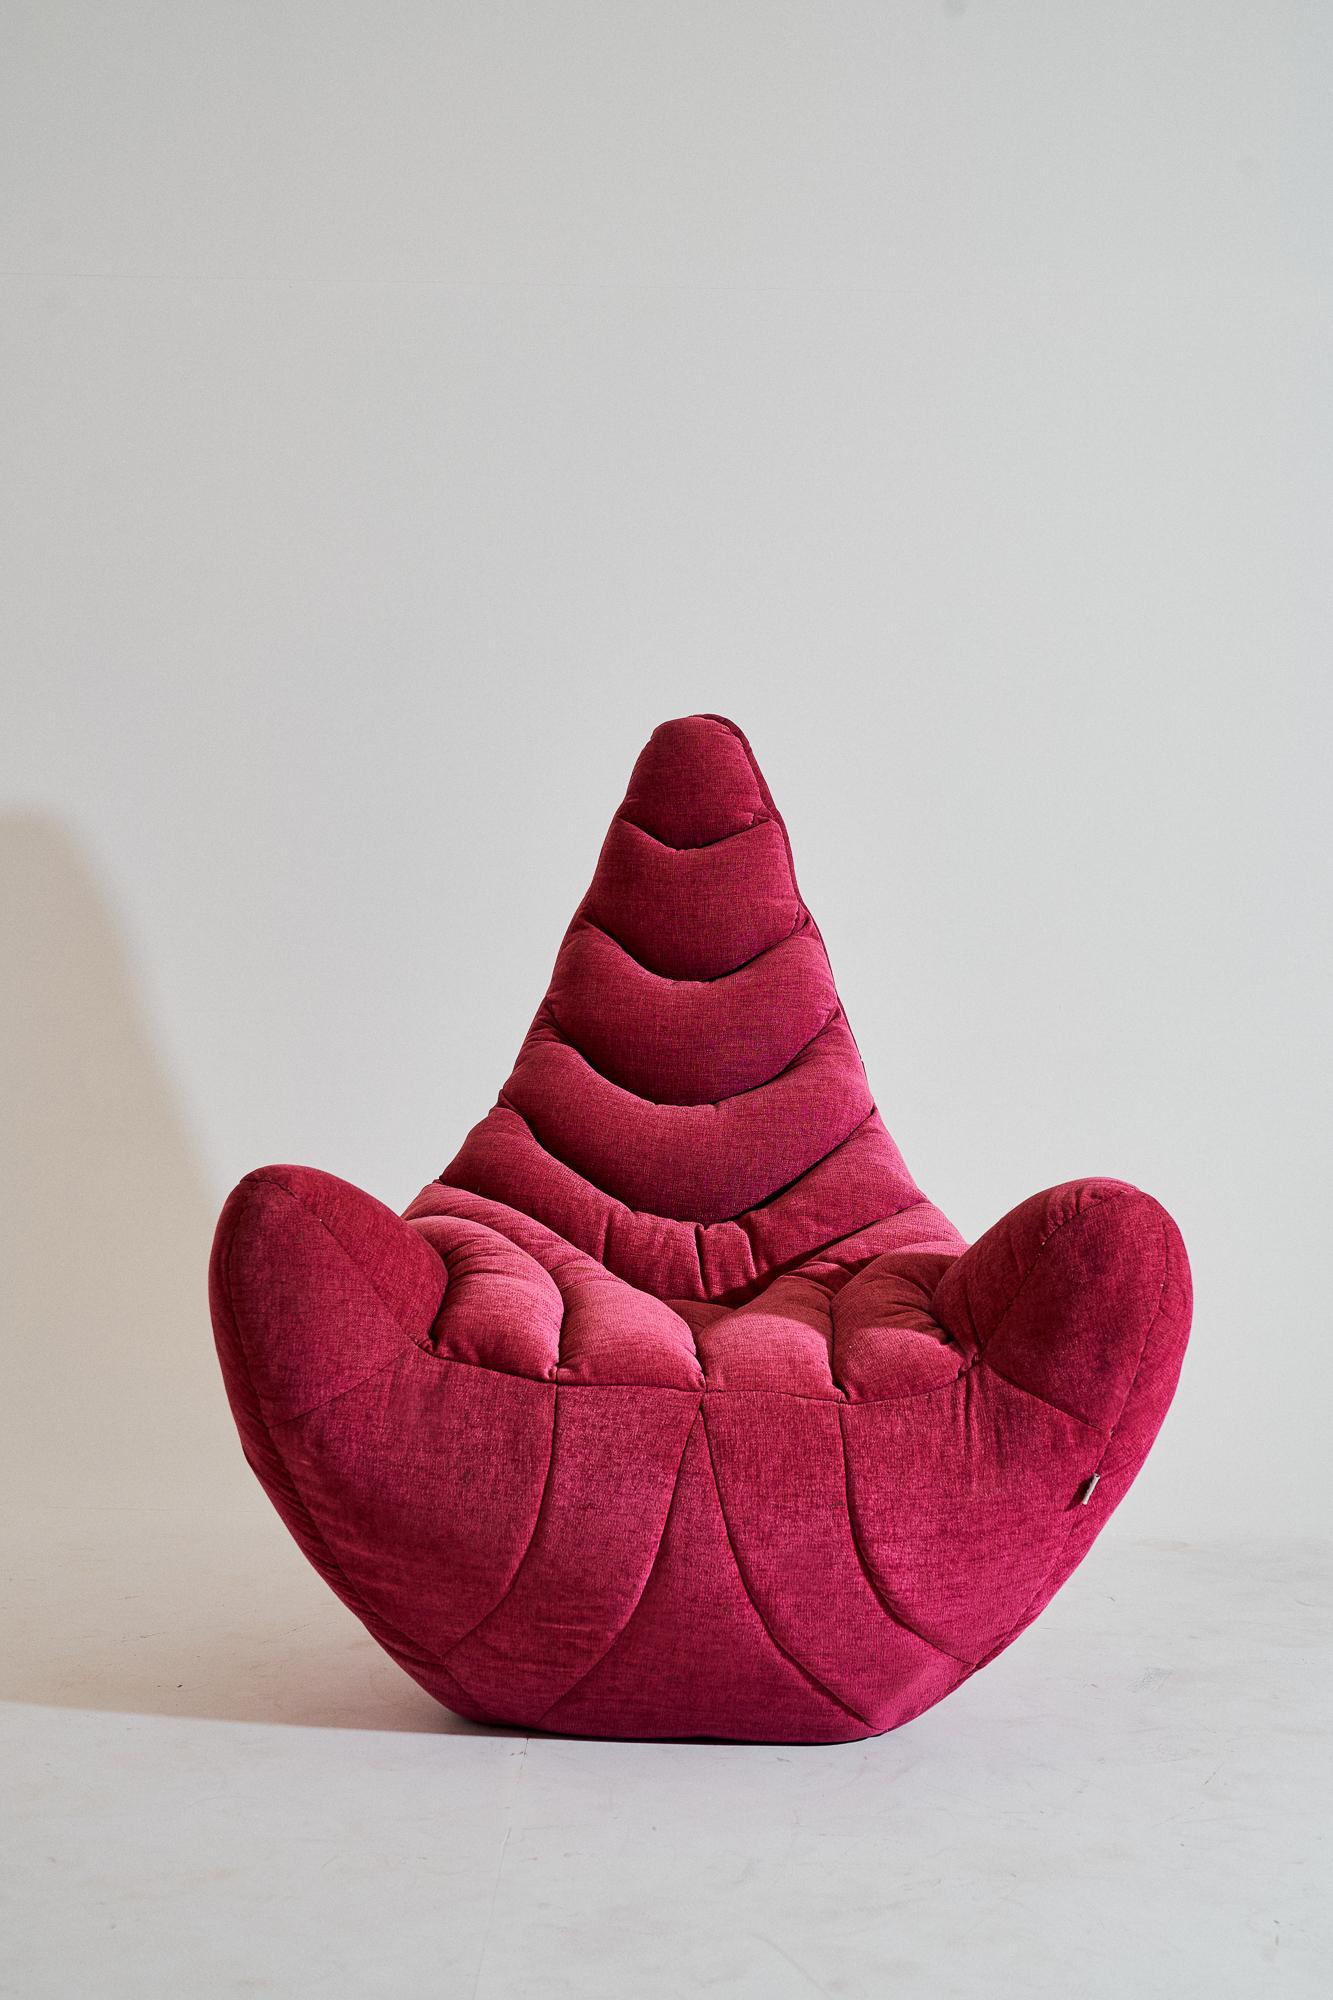 Zeitgenössischer, gepolsterter Sessel aus Fiberglas - Popcorn Armchair von Kunaal Kyhaan. Die sinnliche Form, ist in einem königlichen rosa Plüsch gepolstert Form vorgestellt. Die Faserschichten werden von traditionellen Bildhauern von Hand geformt